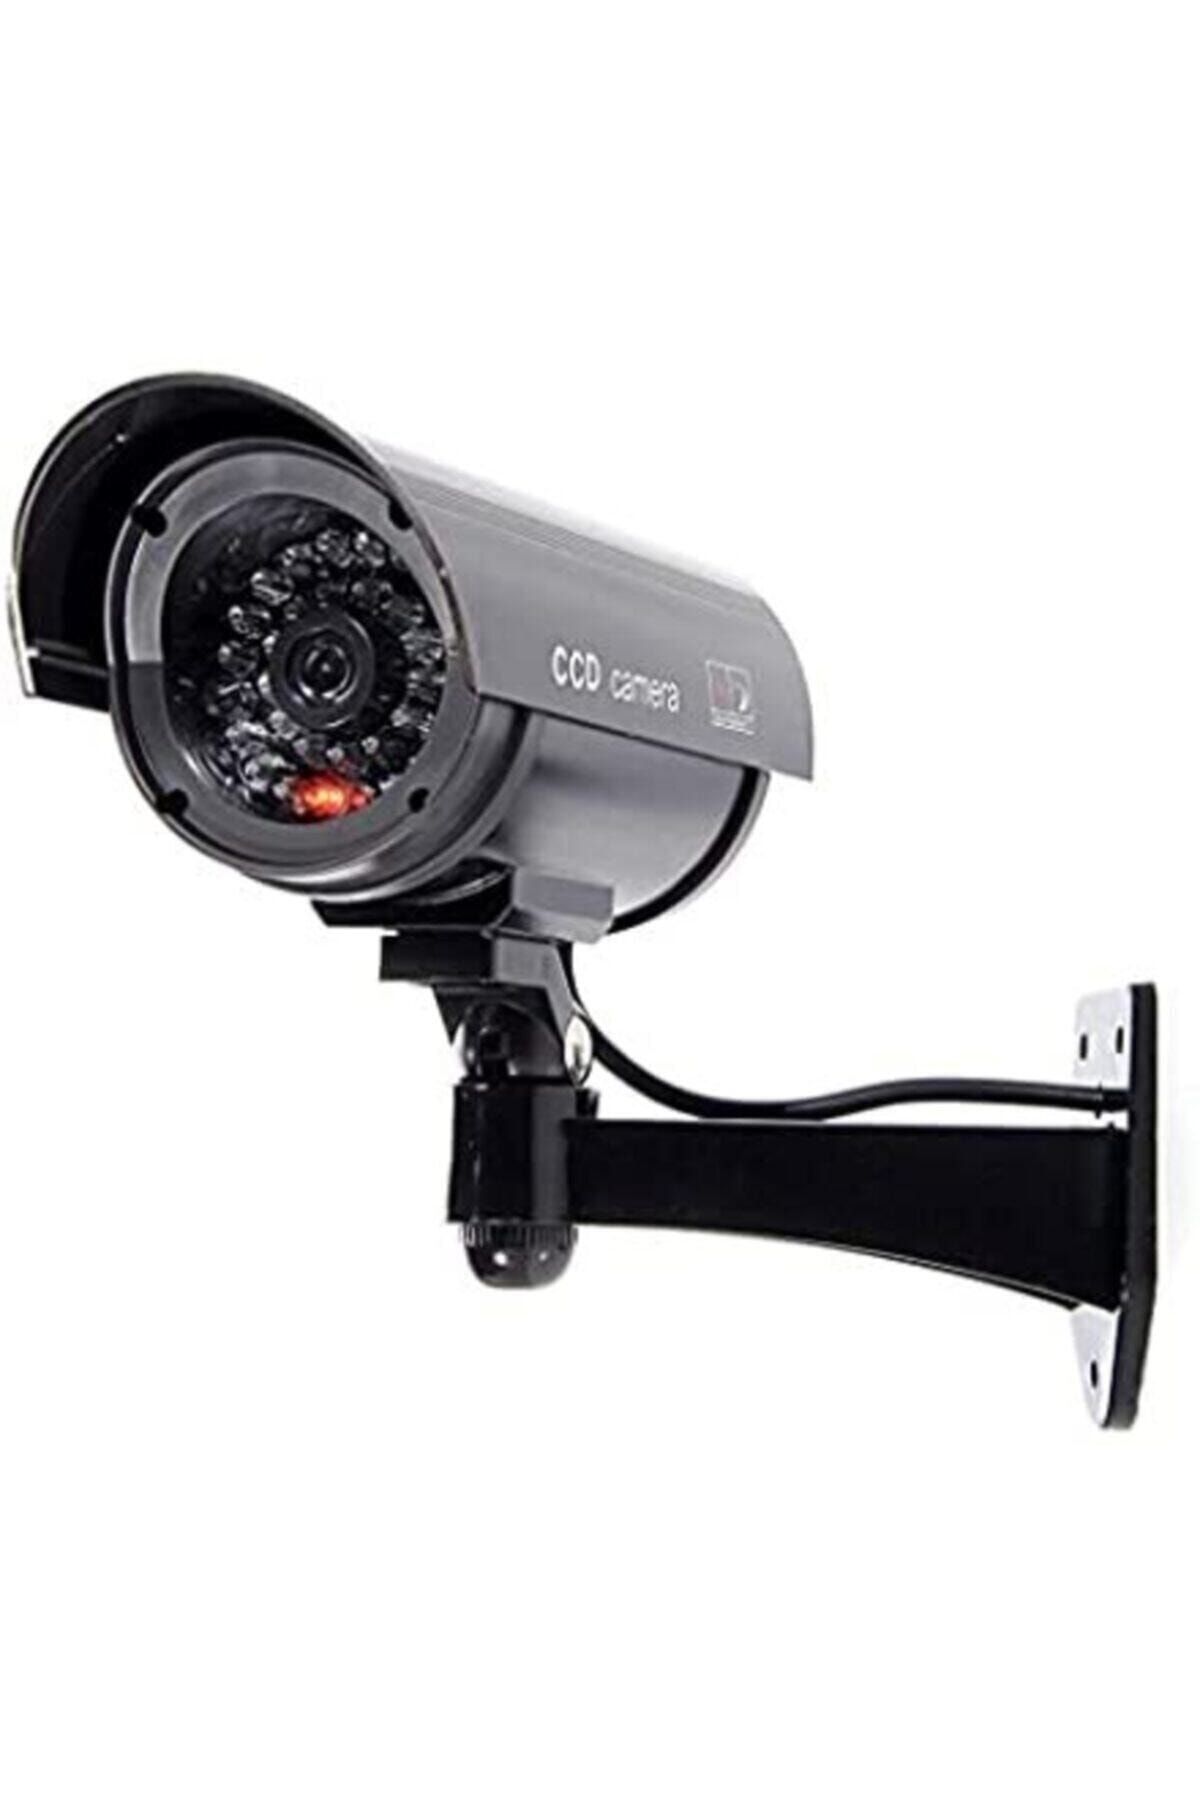 Genel Markalar Gece Görüşlü Pilli Ve Ledli Caydırıcı Sahte Güvenlik Kamerası